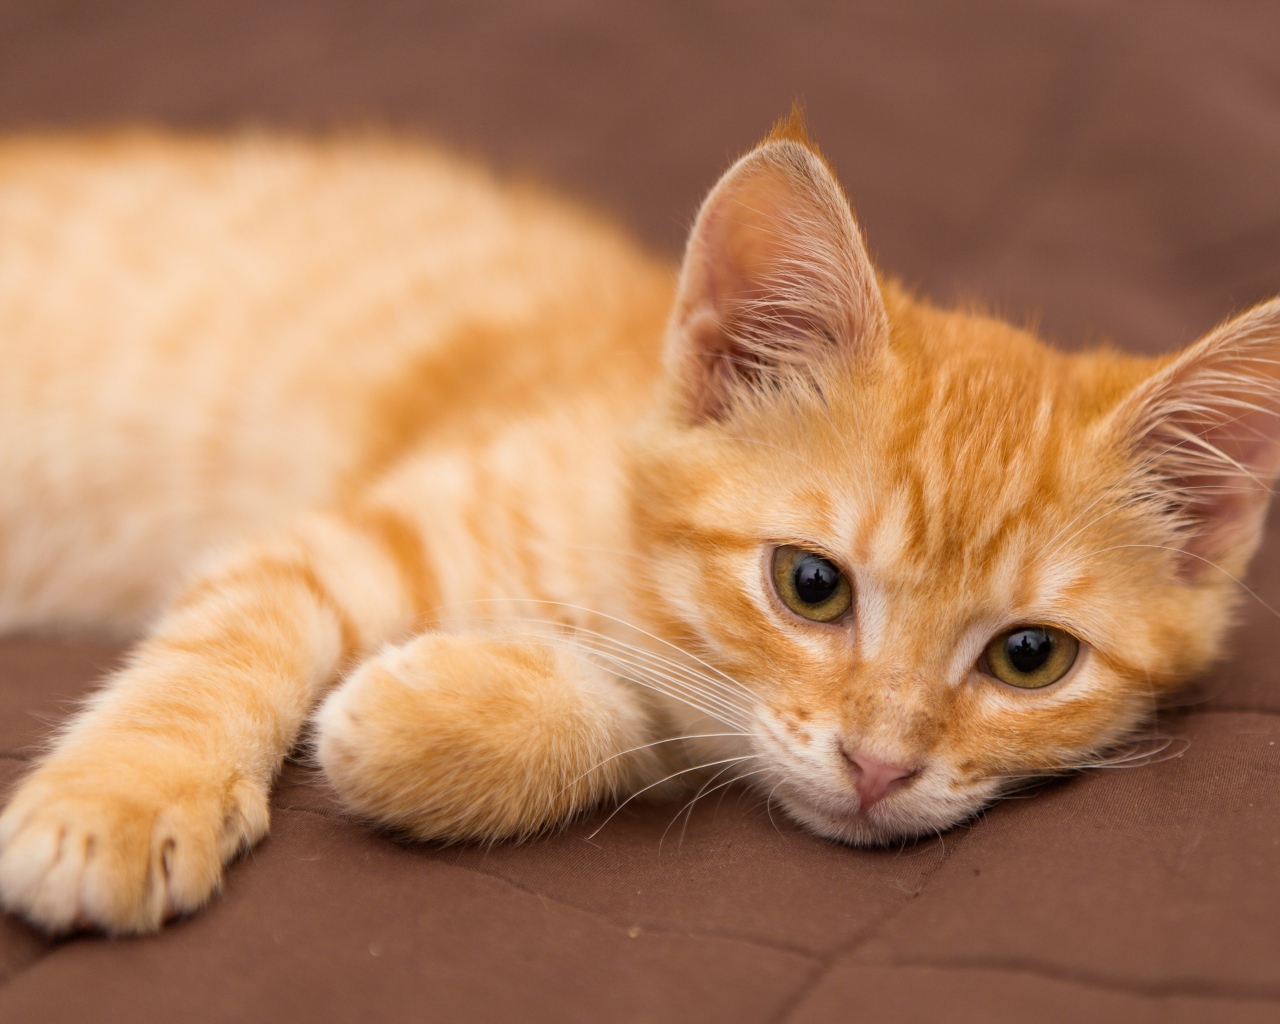 Cute little ginger kitten lies on a sofa